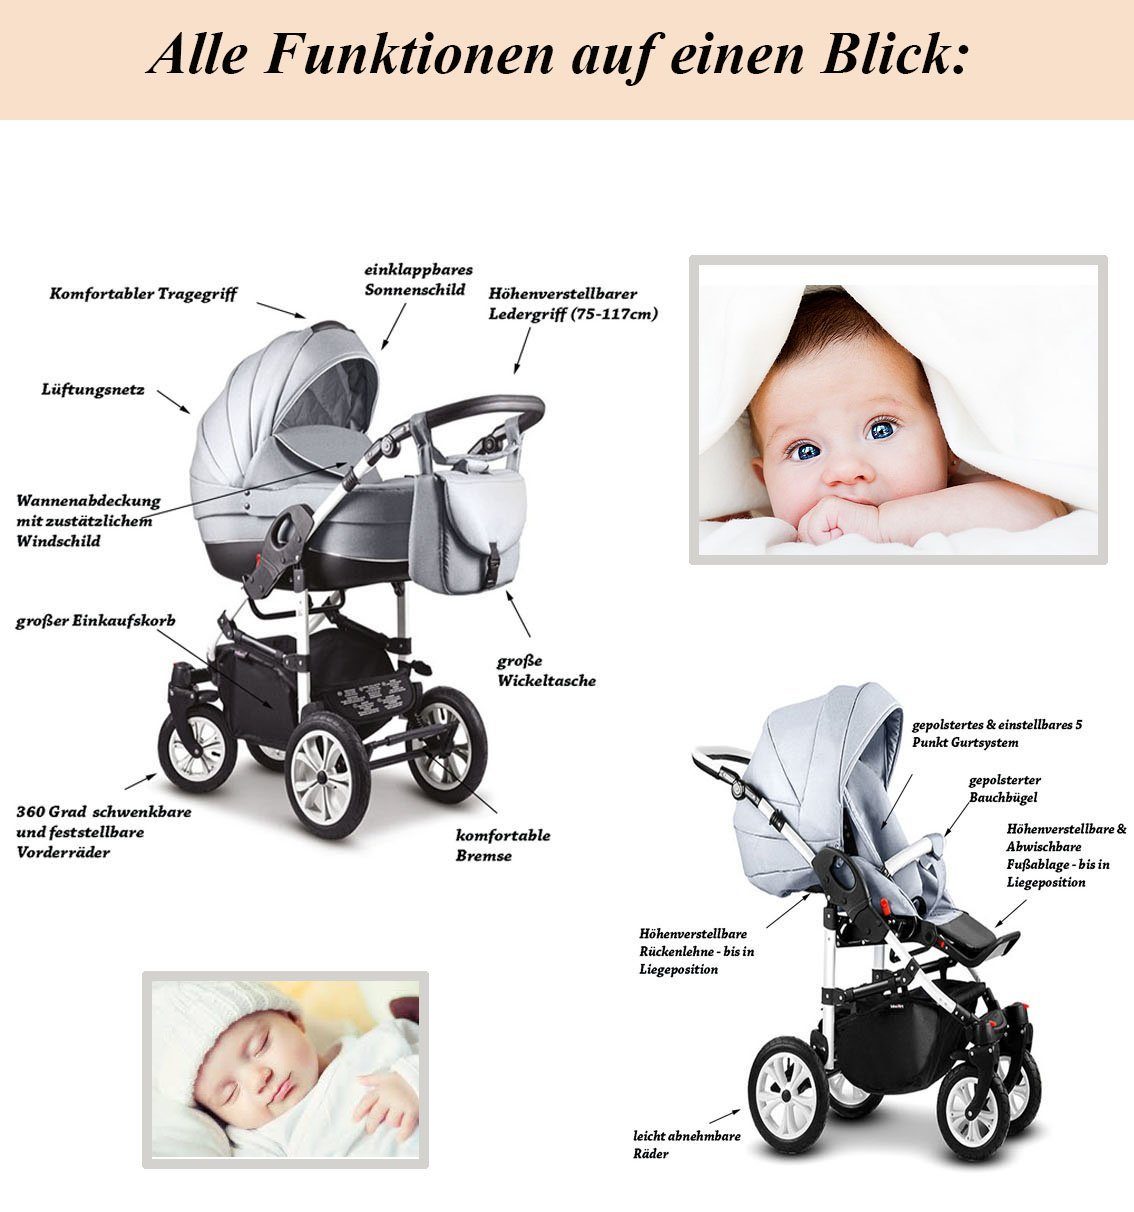 babies-on-wheels Kombi-Kinderwagen 2 in 1 ECO in 16 - Farben Teile Sand-Beige Cosmo Kinderwagen-Set 13 - Kunstleder